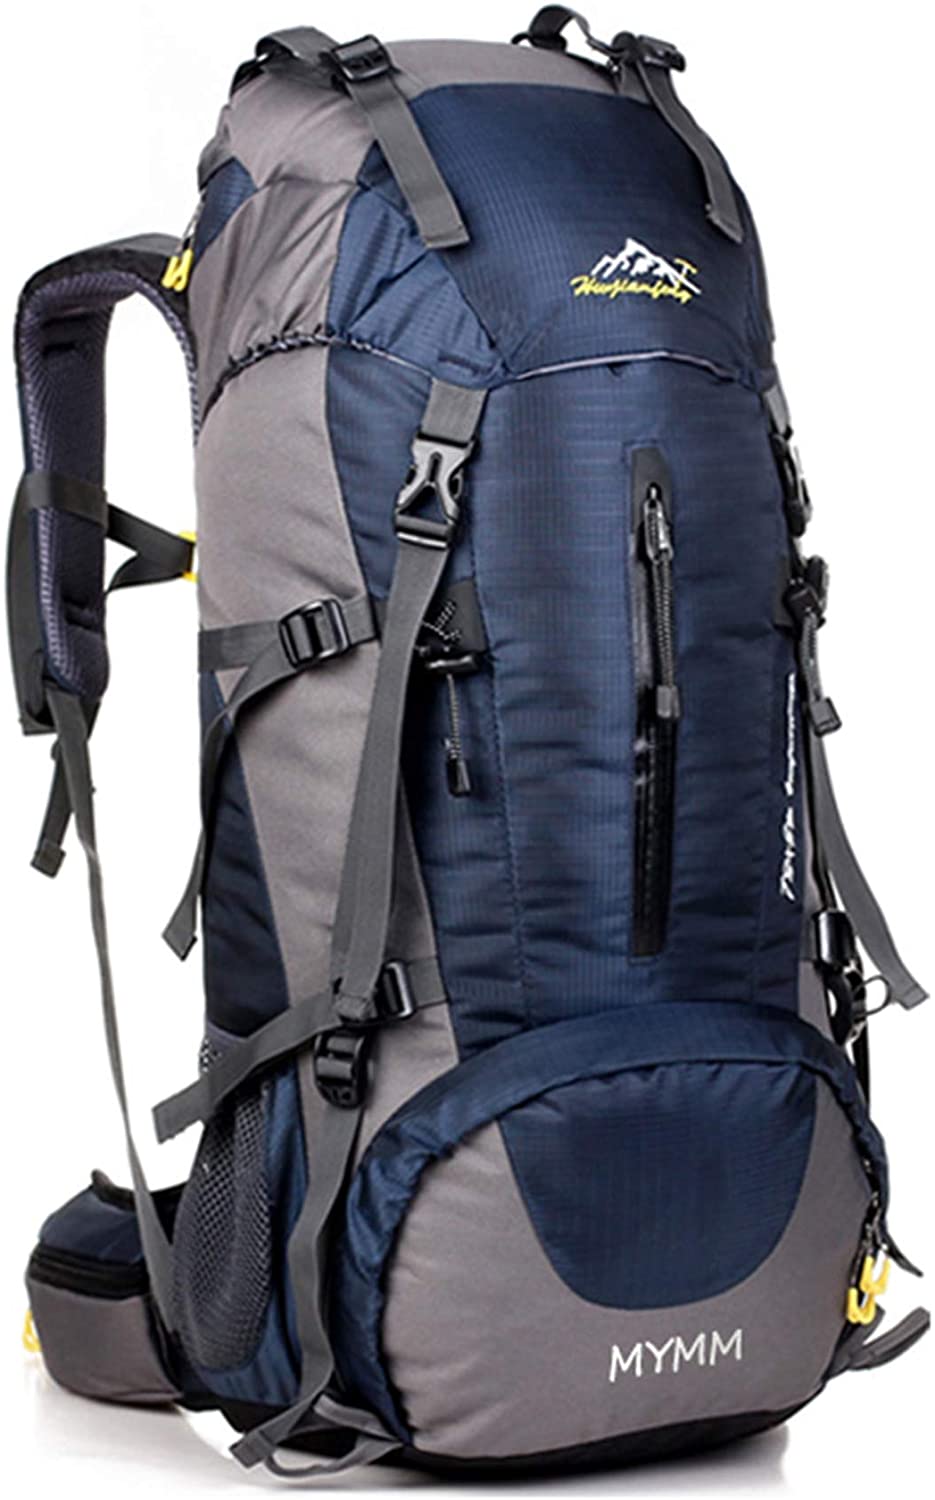 HWJIANFENG Zaini 80+5L Sportivi Unisex in Nylon Poliestere da Trekking Borse per Outdoor Campeggio Escursionismo Viaggi Blu 